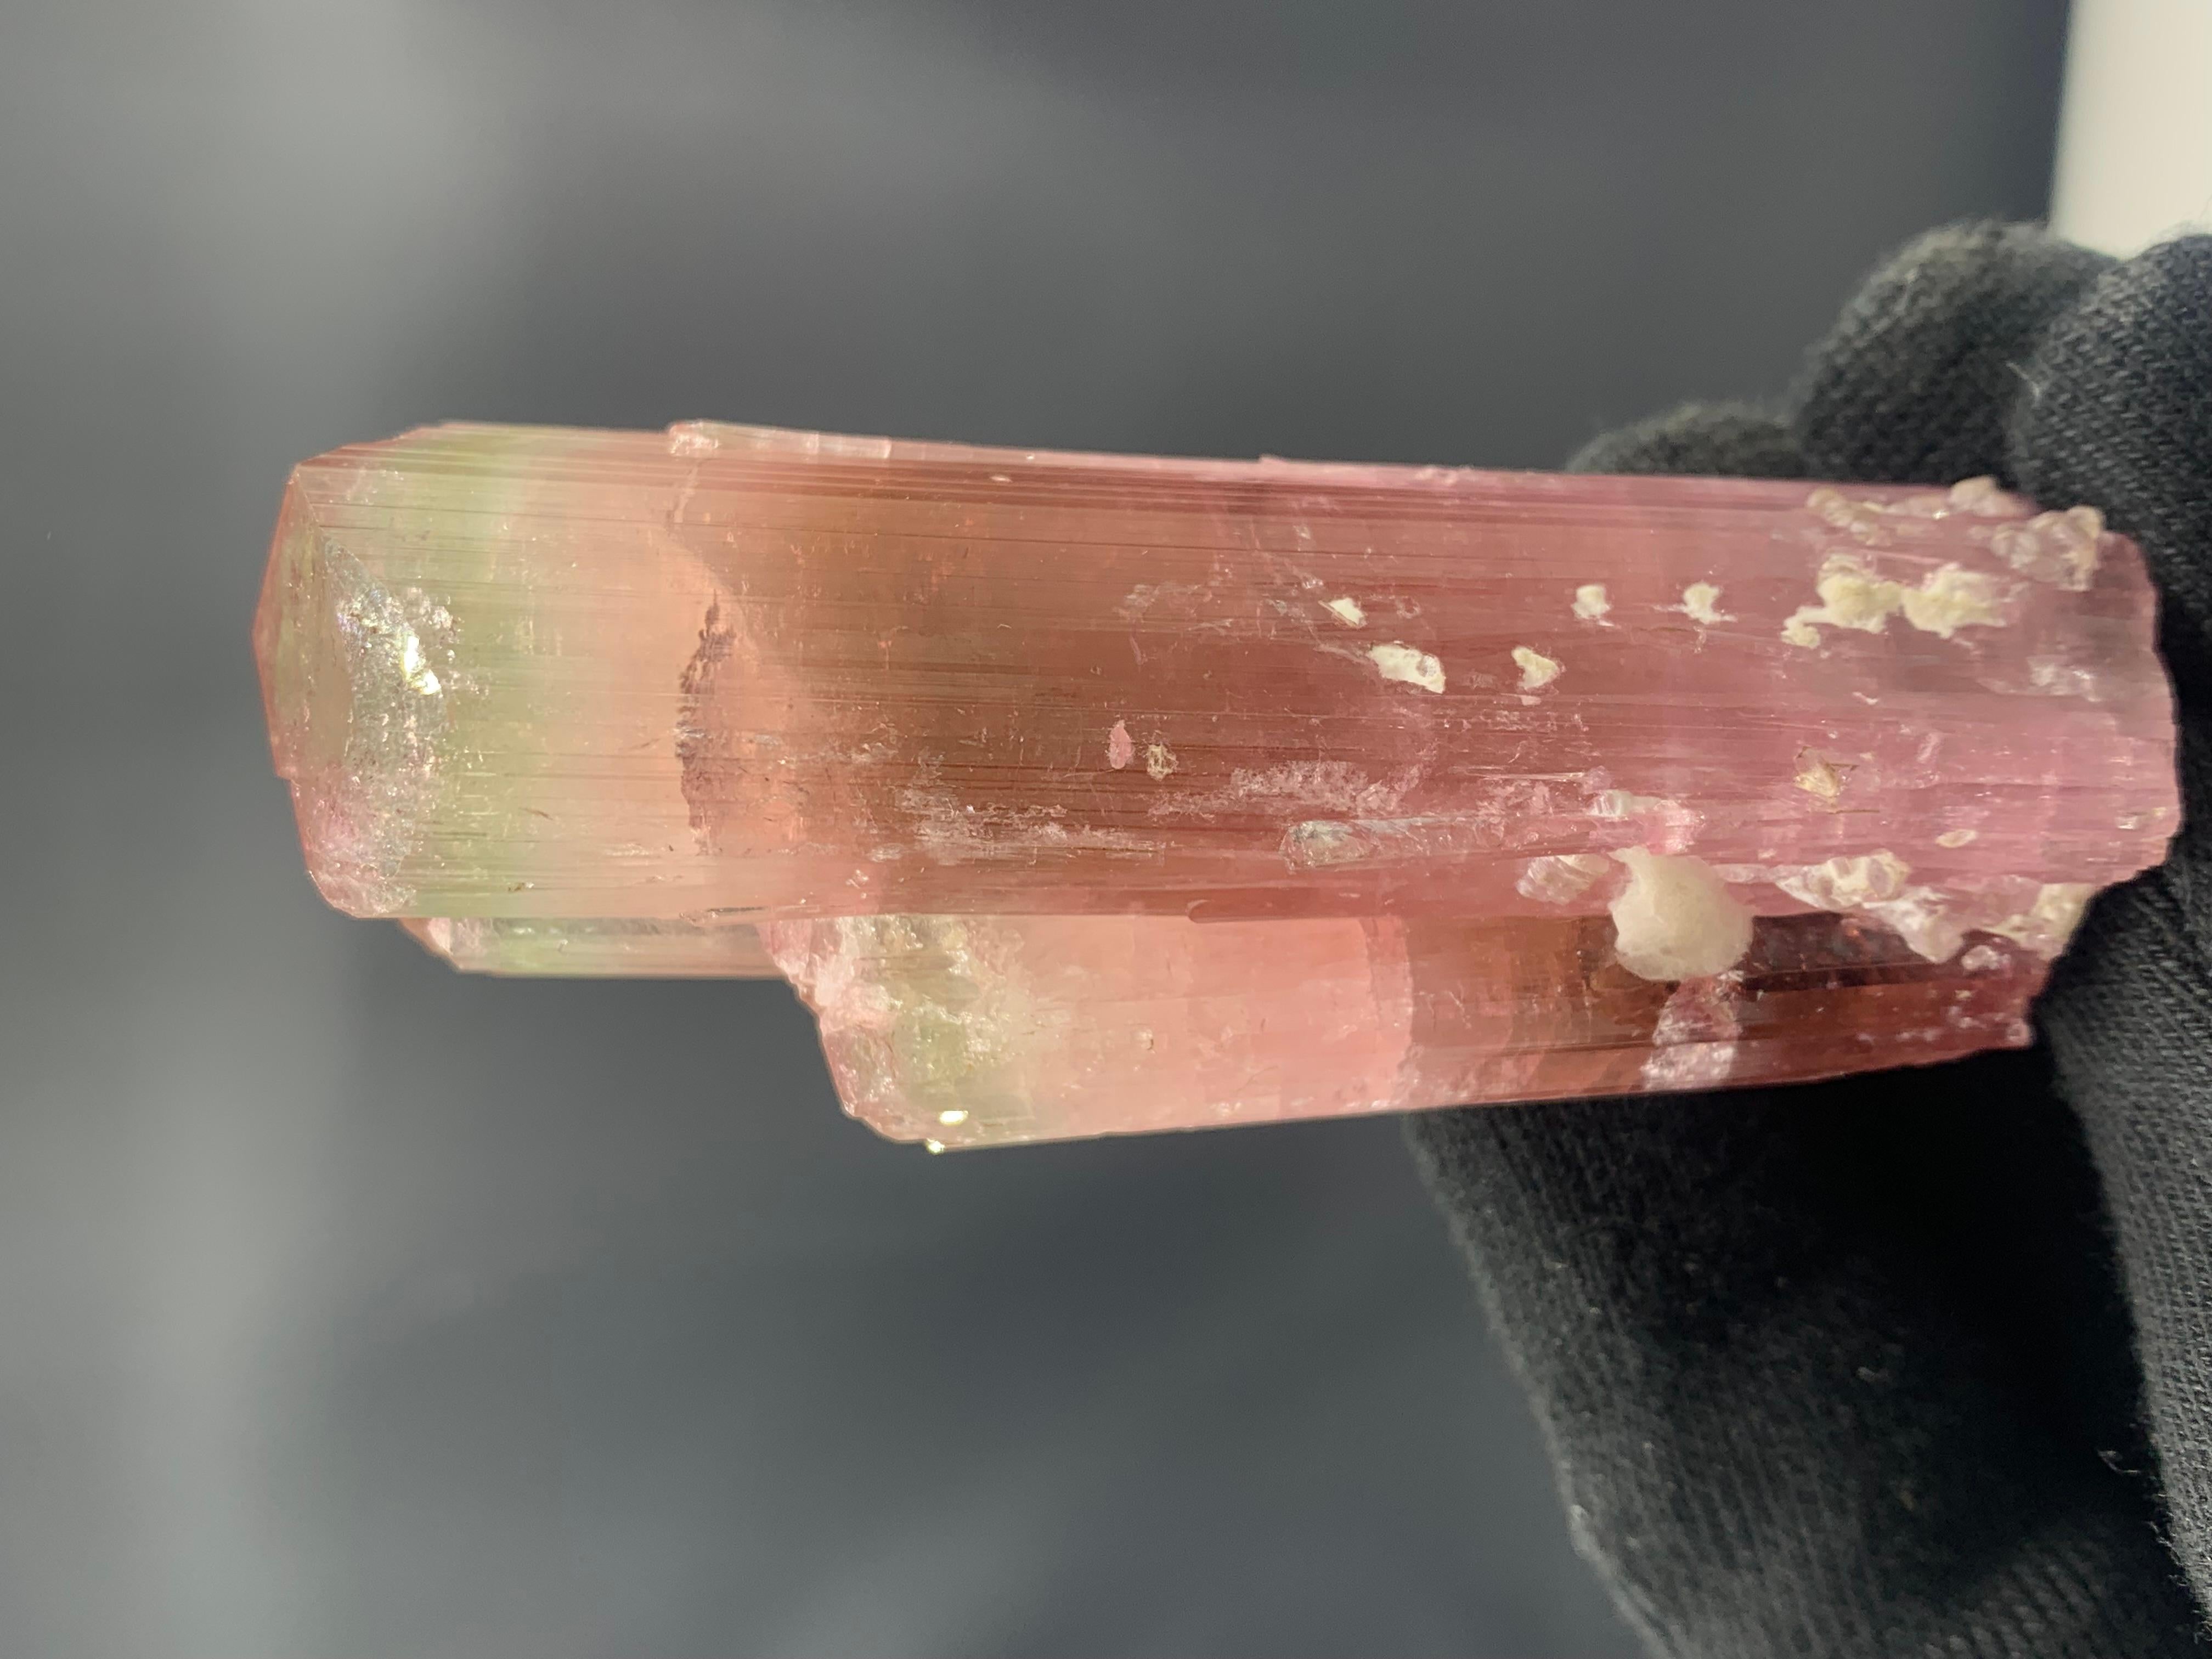  Superbe cristal de tourmaline bicolore d'Afghanistan
POIDS : 111,33 grammes
DIMENSIONS : 8,4 x 3,3 x 2,8 cm
ORIGINE : Kunar, Afghanistan
TRAITEMENT : Aucun

La tourmaline est une pierre précieuse extrêmement populaire ; le nom Tourmaline est dérivé